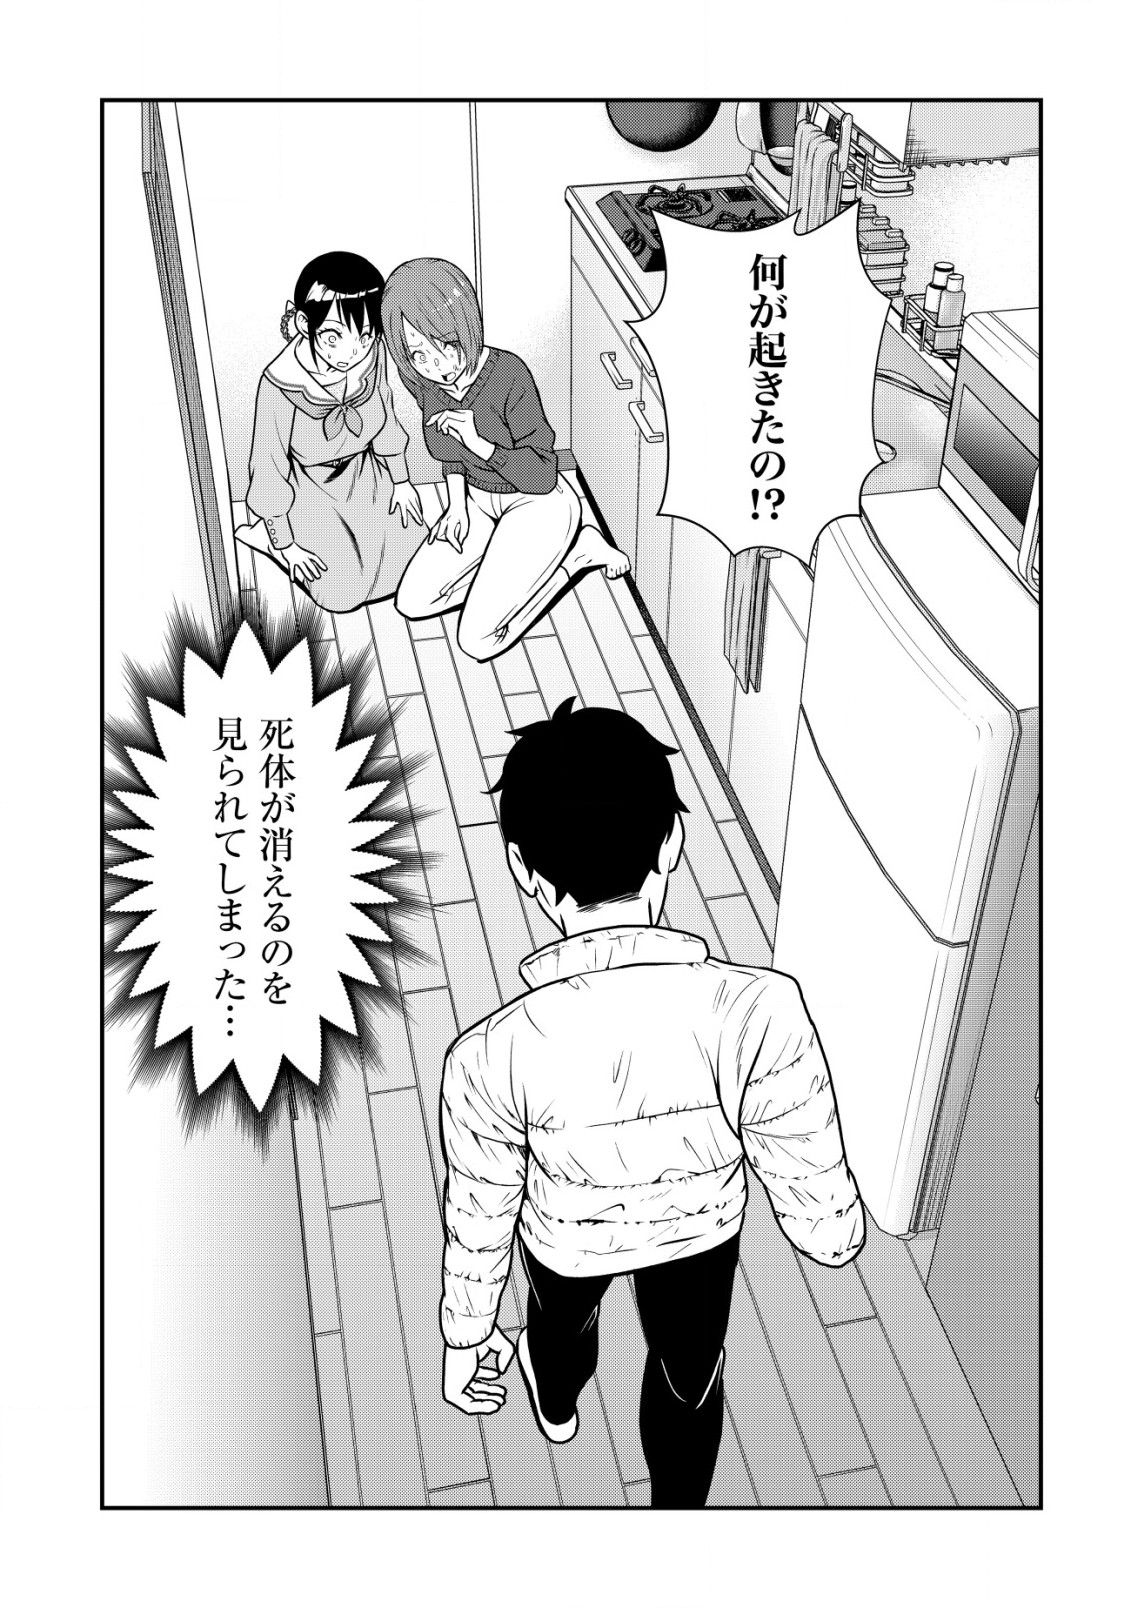 Leveling Murder – Shuu ni Ichido Hito wo Korosanai to Jibun ga Shinde Shimau no de, Sore Nara Isso Kanzenchoaku Shiyou to Omoimasu - Chapter 3.1 - Page 2